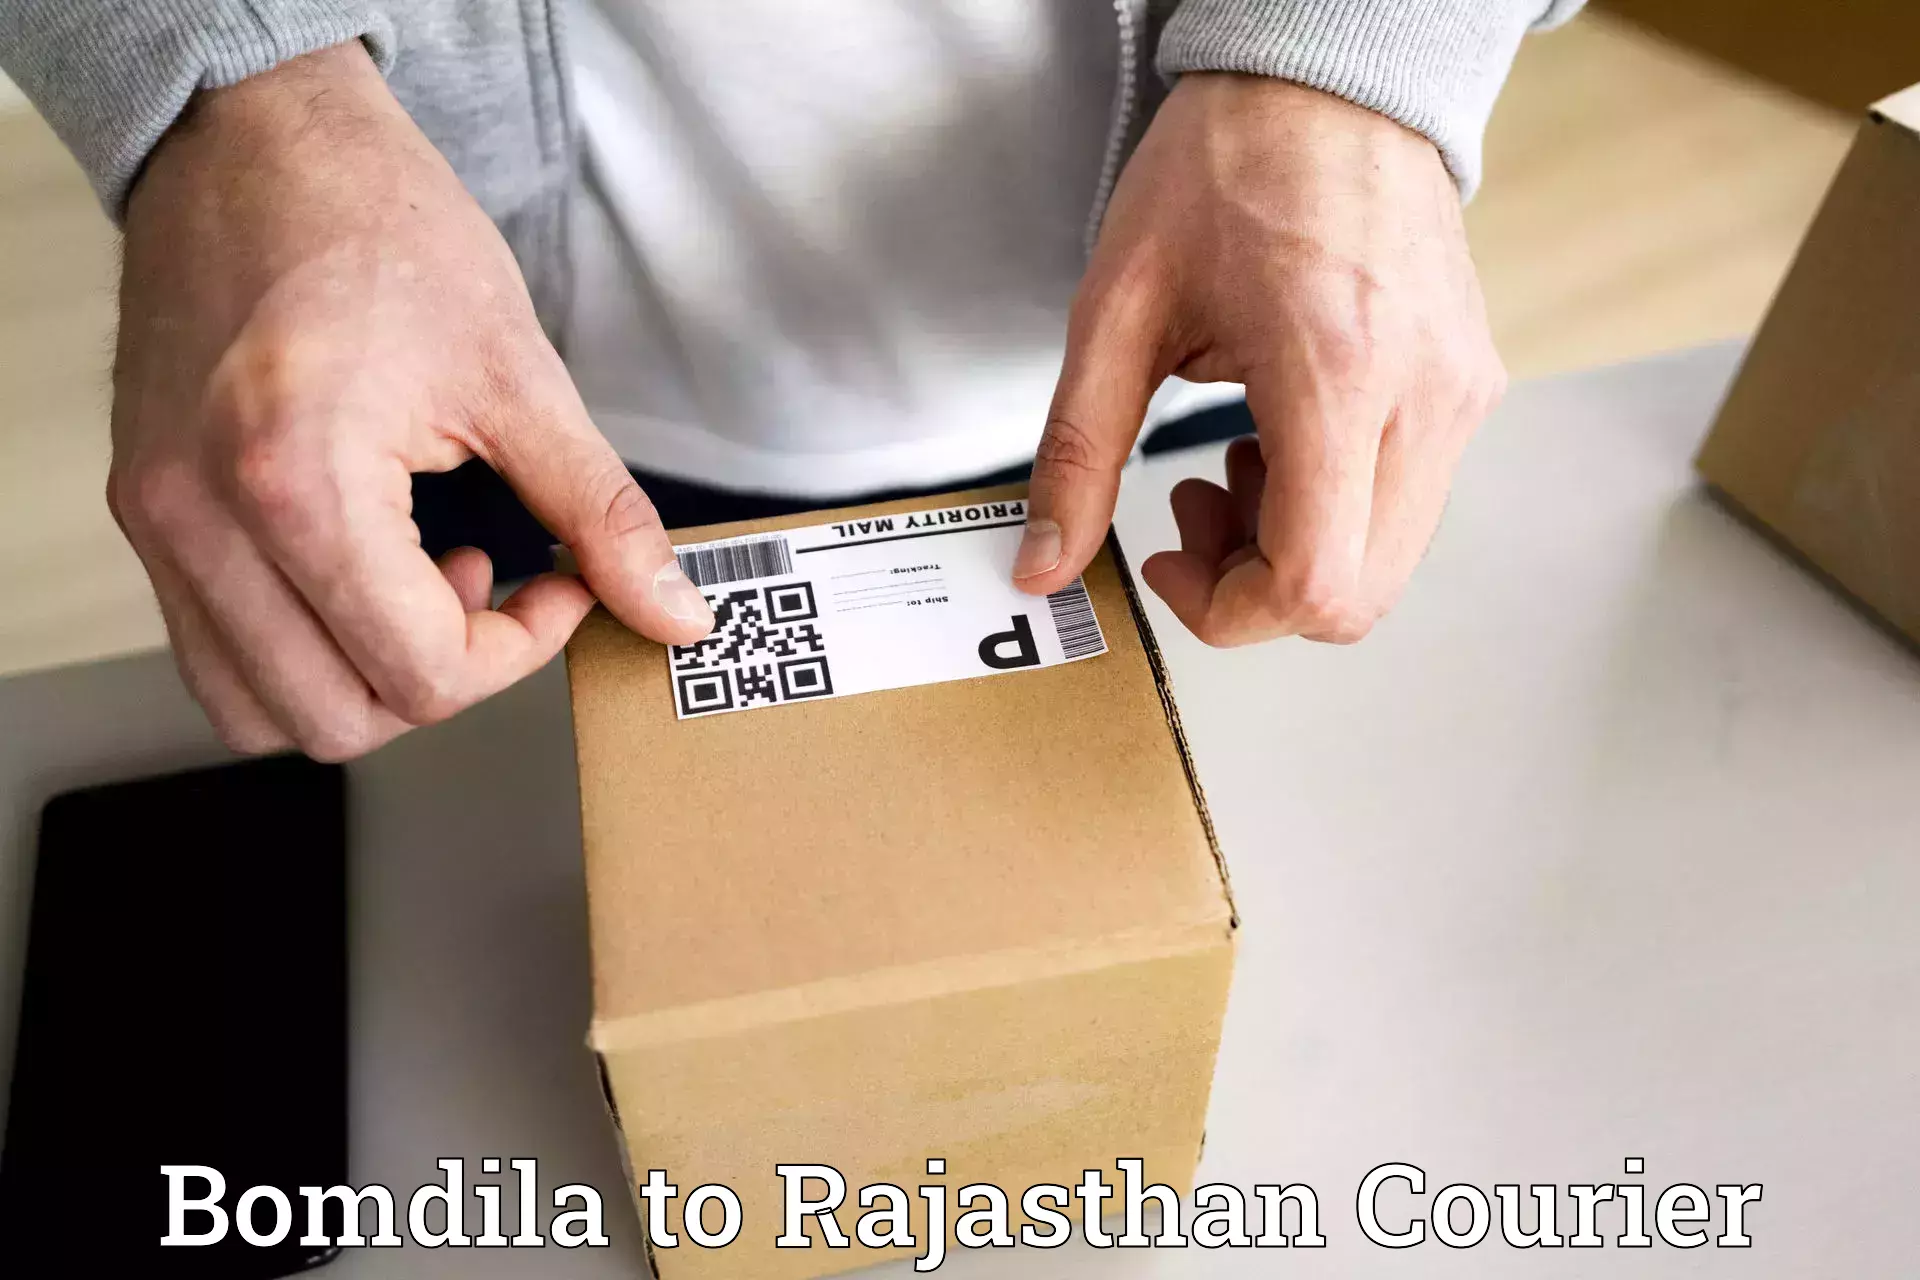 Fragile item shipping in Bomdila to Kumbhalgarh